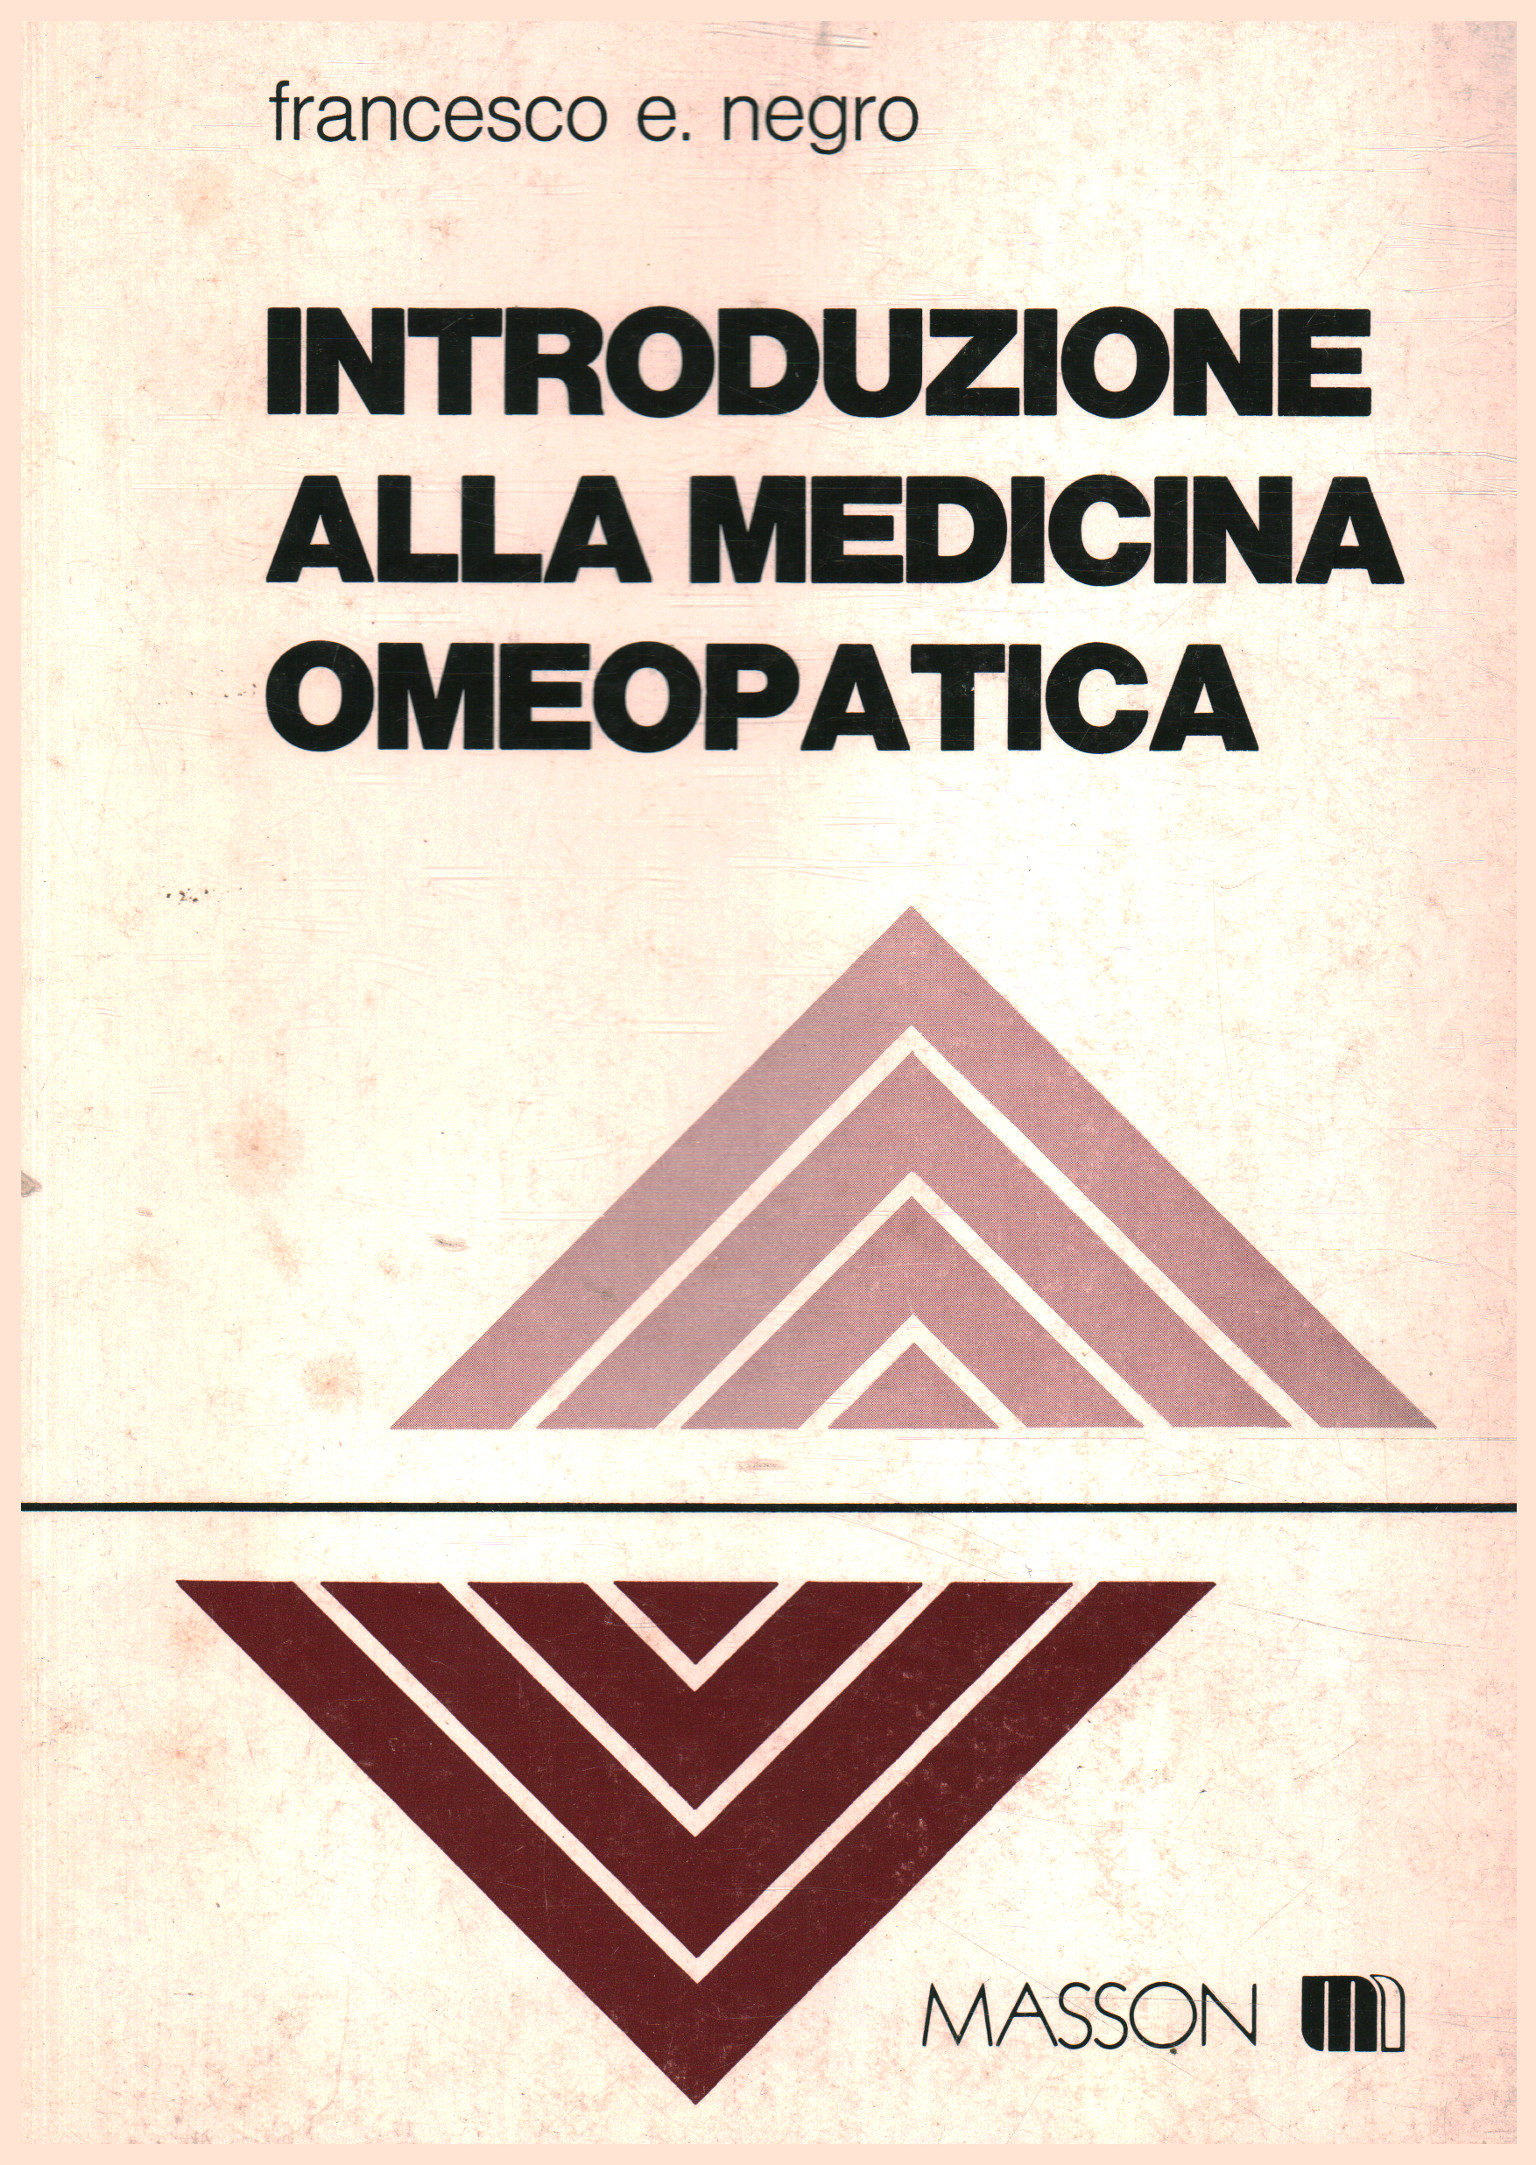 Introduzione alla medicina omeopatica, Francesco E. Negro